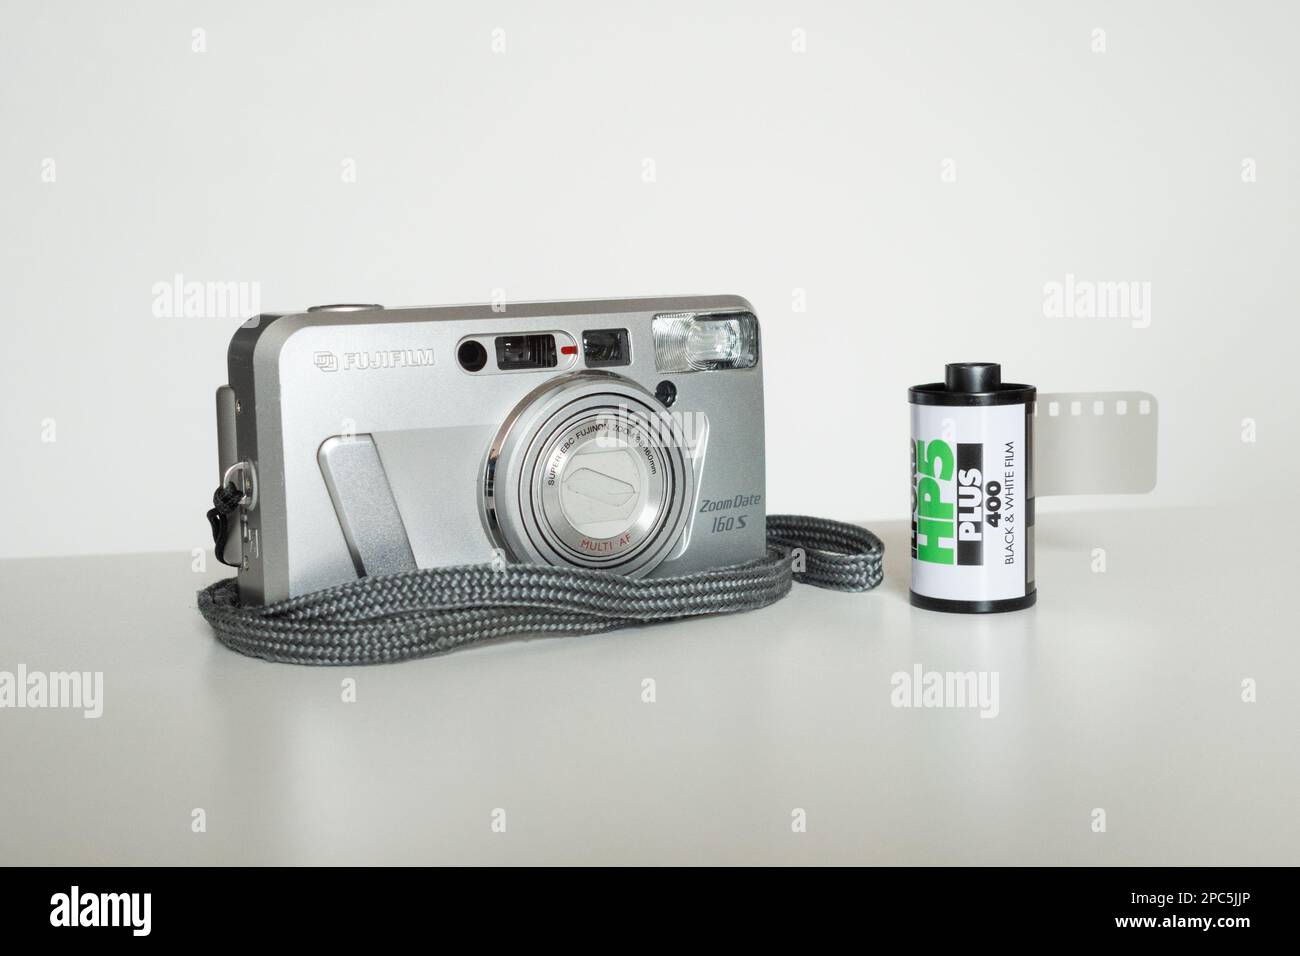 Appareil photo compact Fujifilm Zoom Date 160S avec cassette de film 35mm ou cartouche prête à être chargée Banque D'Images